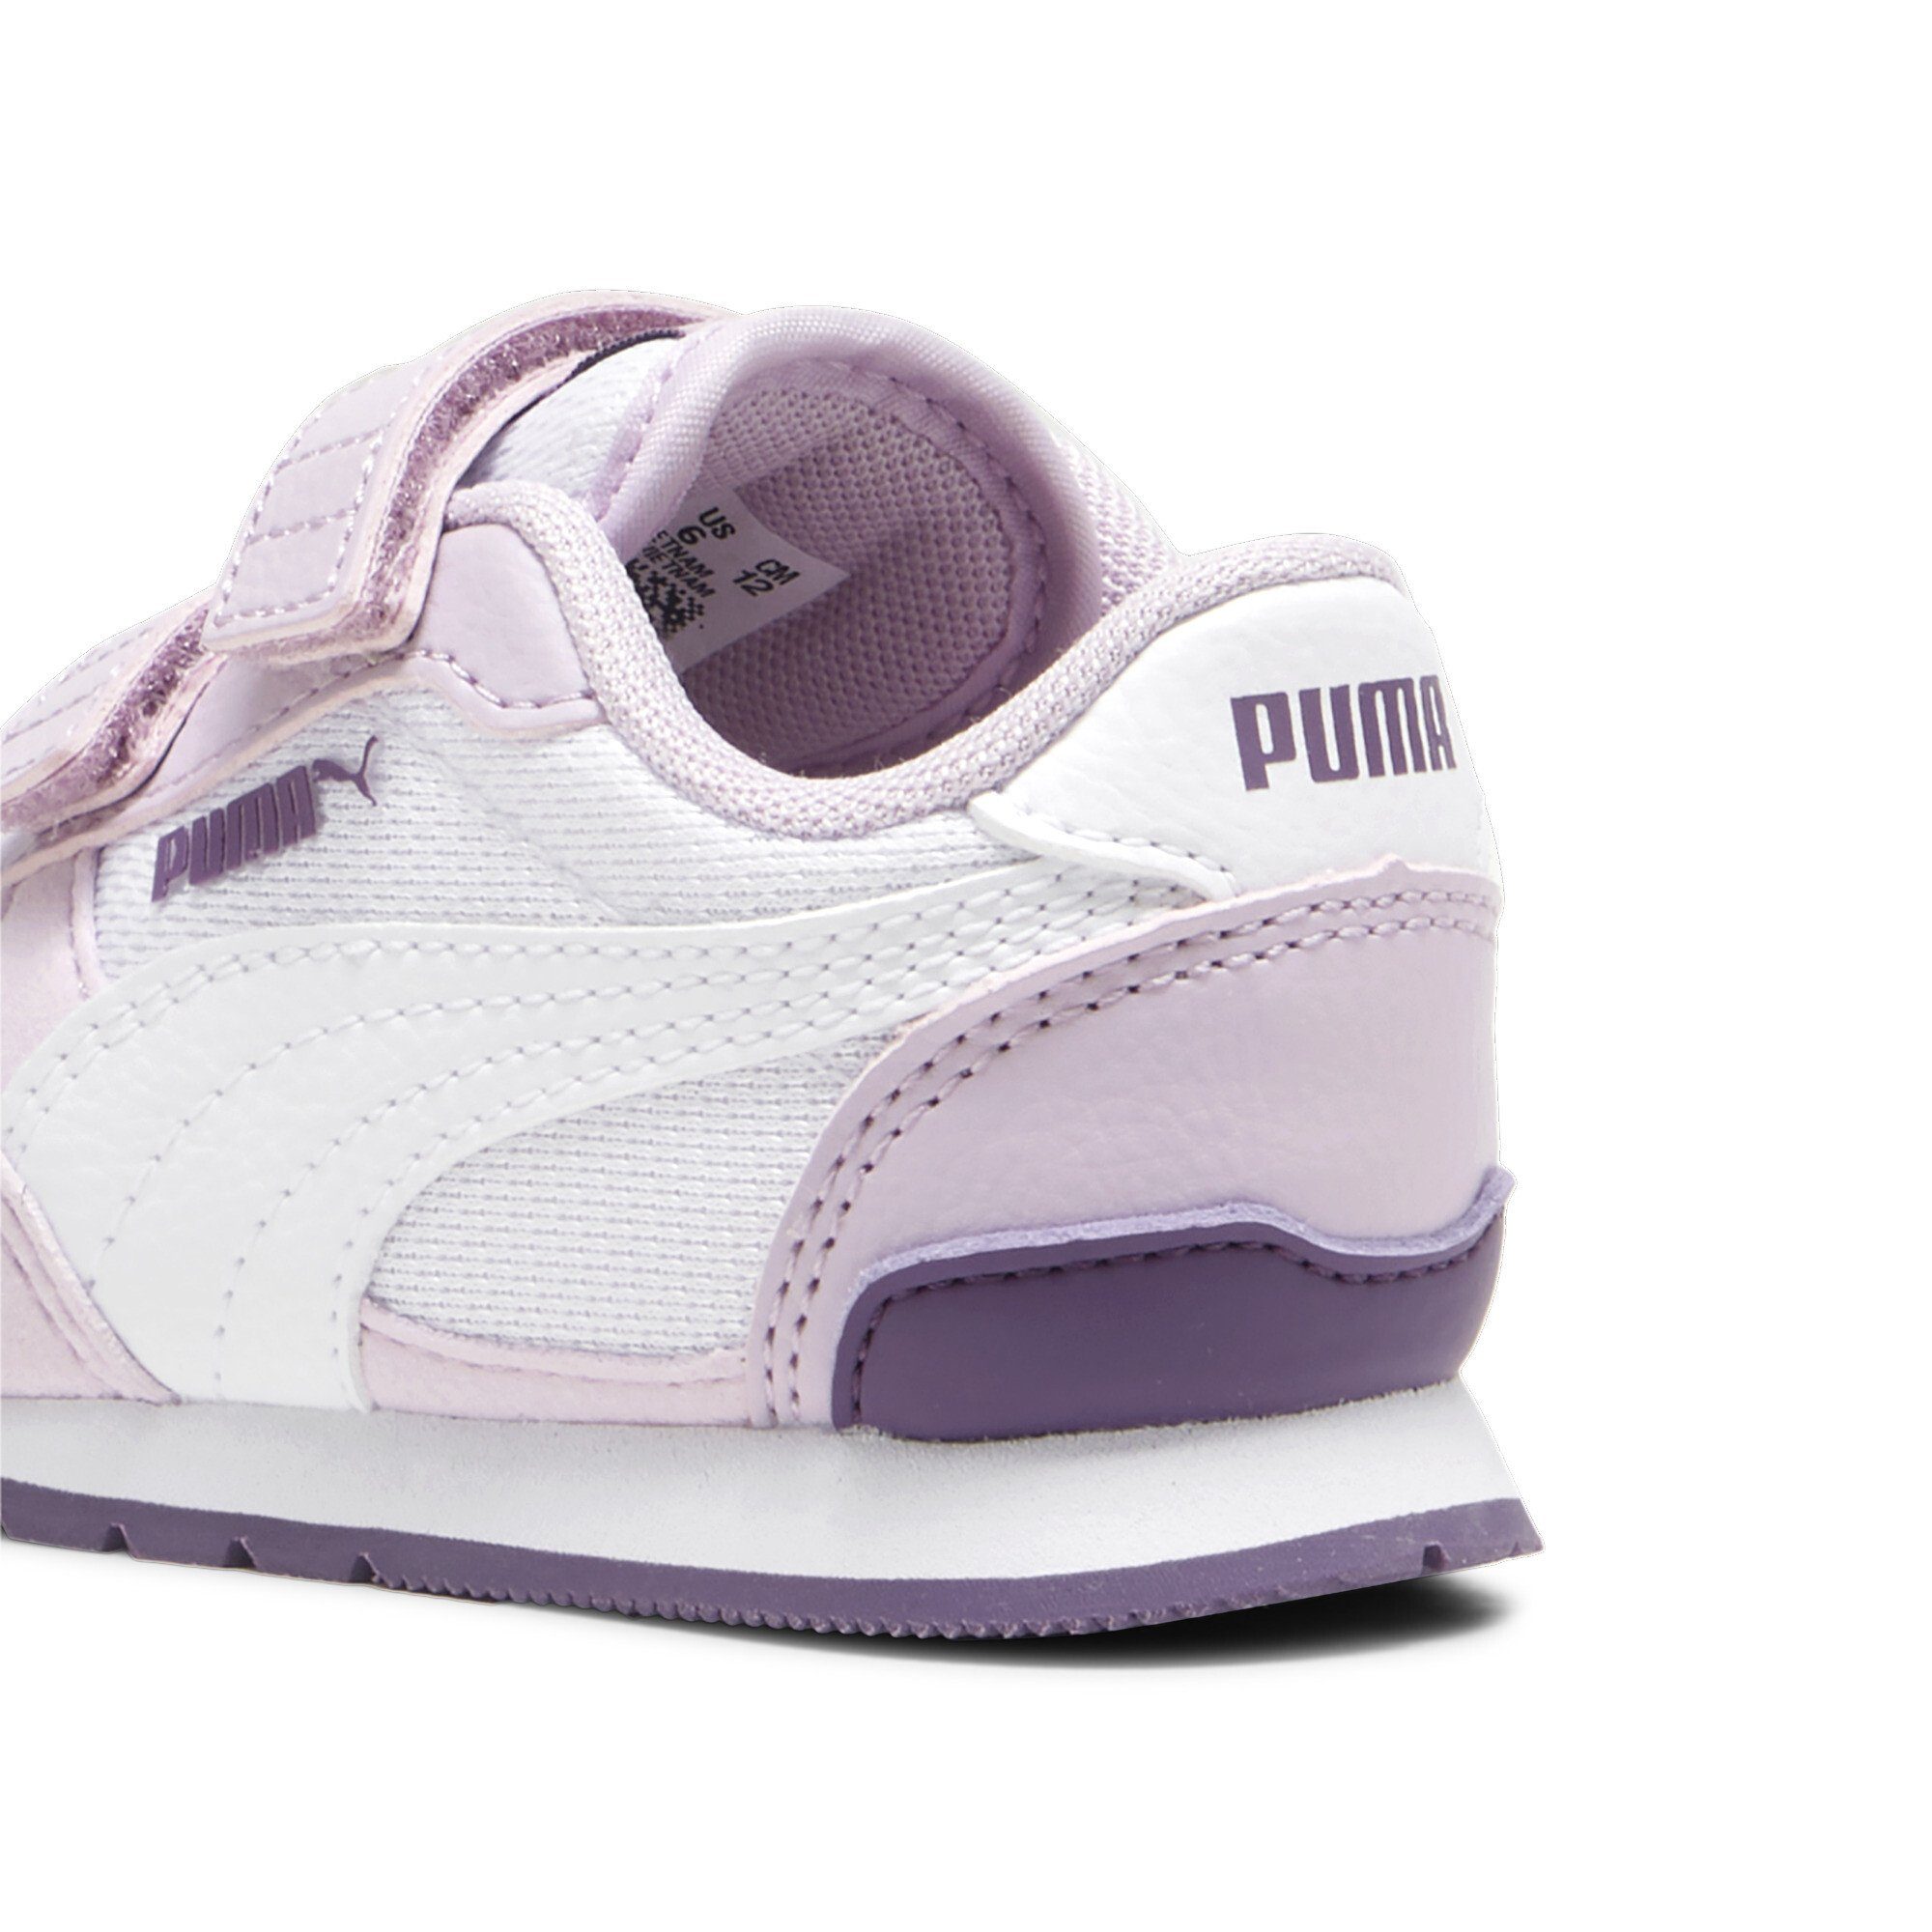 PUMA ST Runner v3 Mesh White Kinder Berry Sneakers Crushed Purple Mist Grape V Sneaker